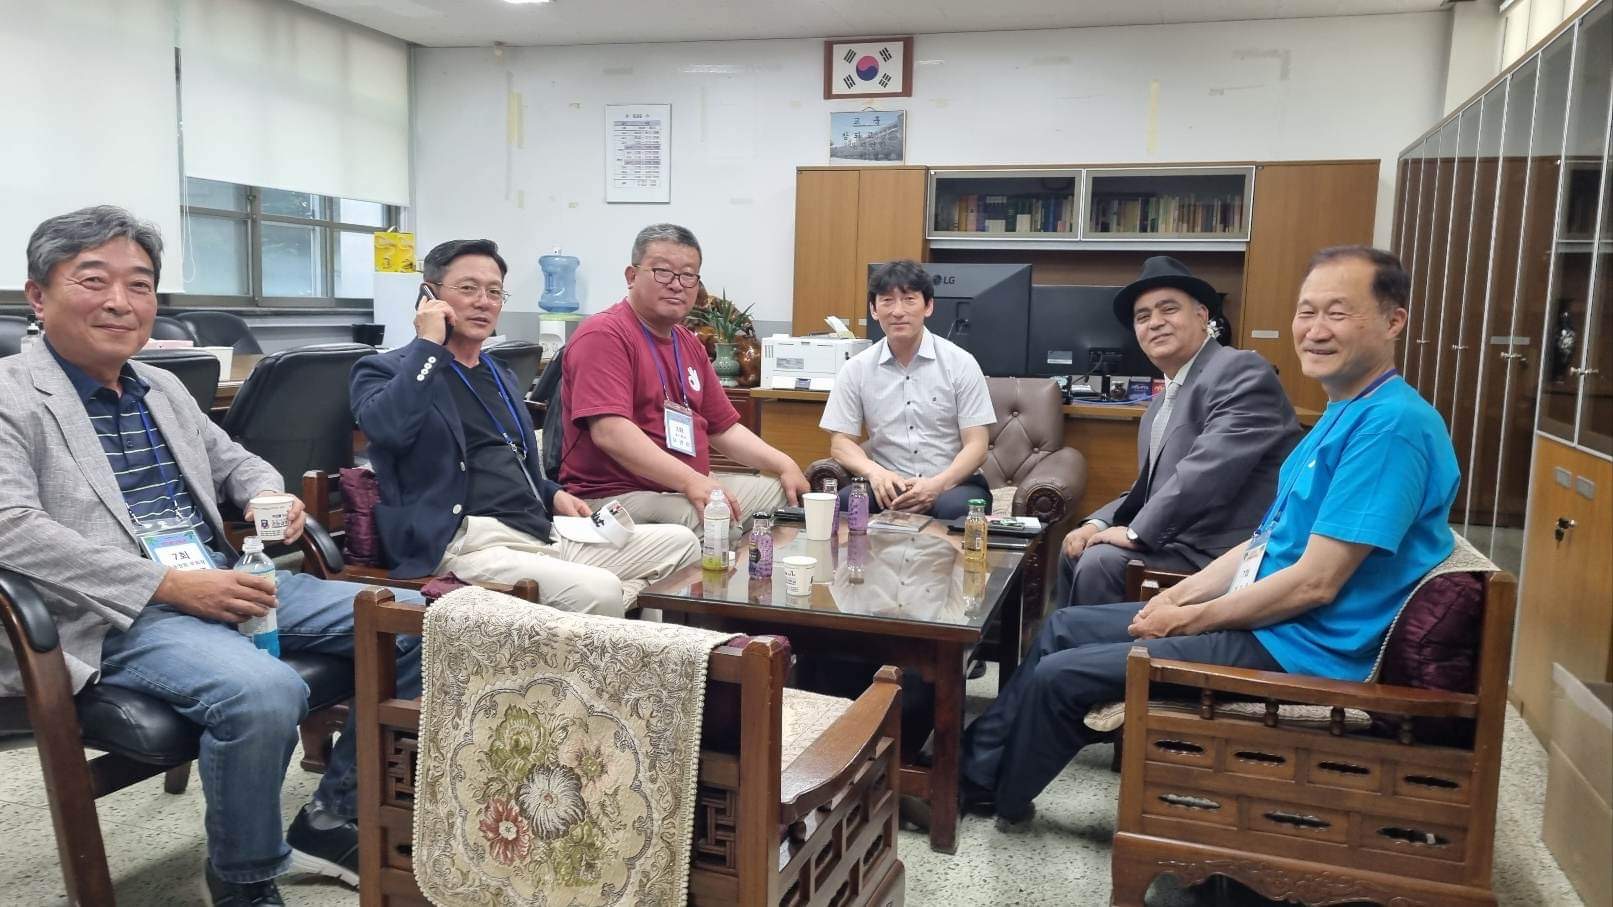 عودة الشيوخ إلى صباهم … في مدرستهم الثانوية الكورية!